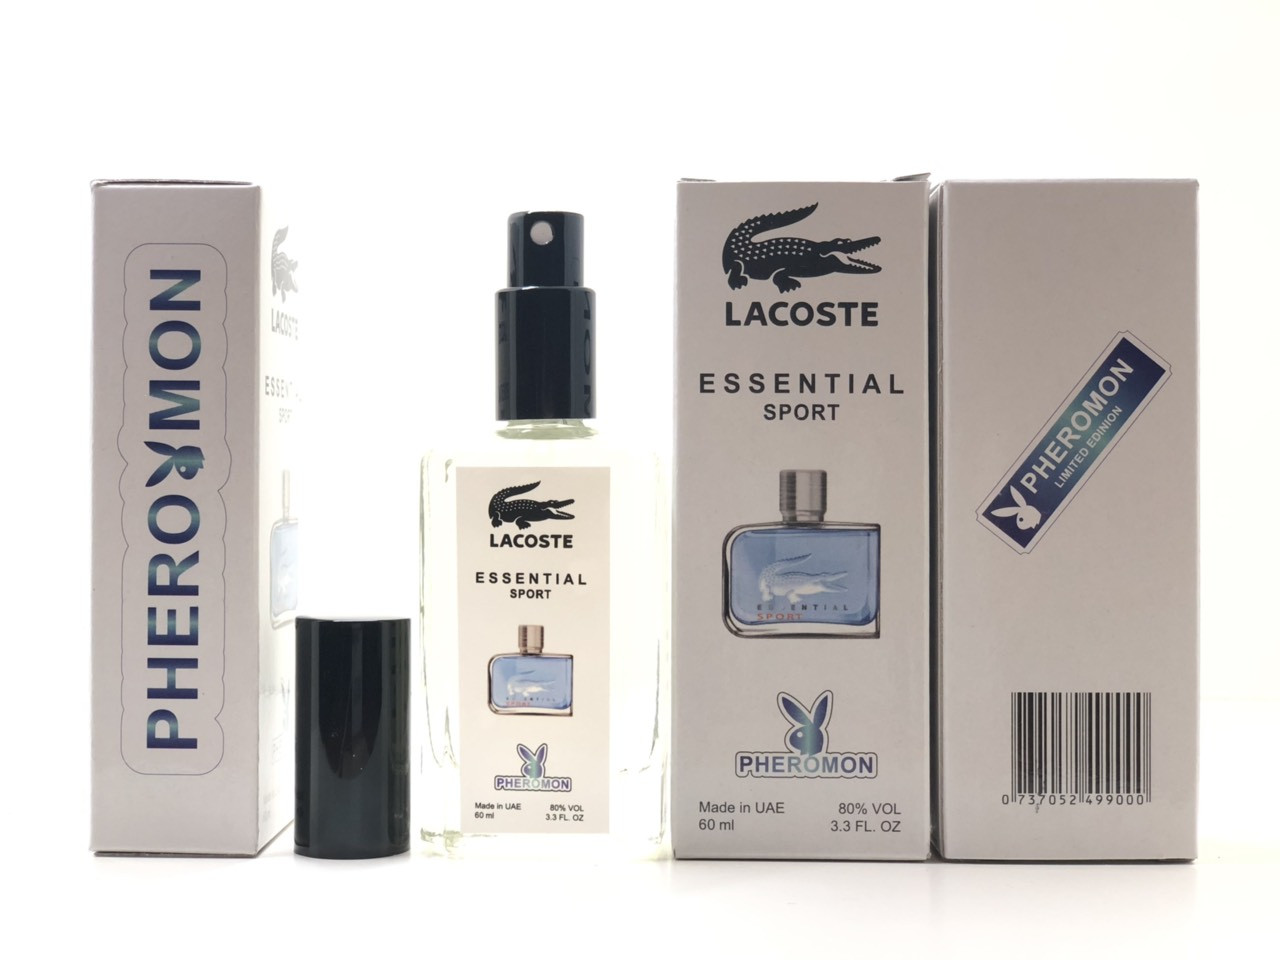 Чоловічий аромат Lacoste Essential Sport (Лакоста Эсеншиал Спорт) з феромоном 60 мл